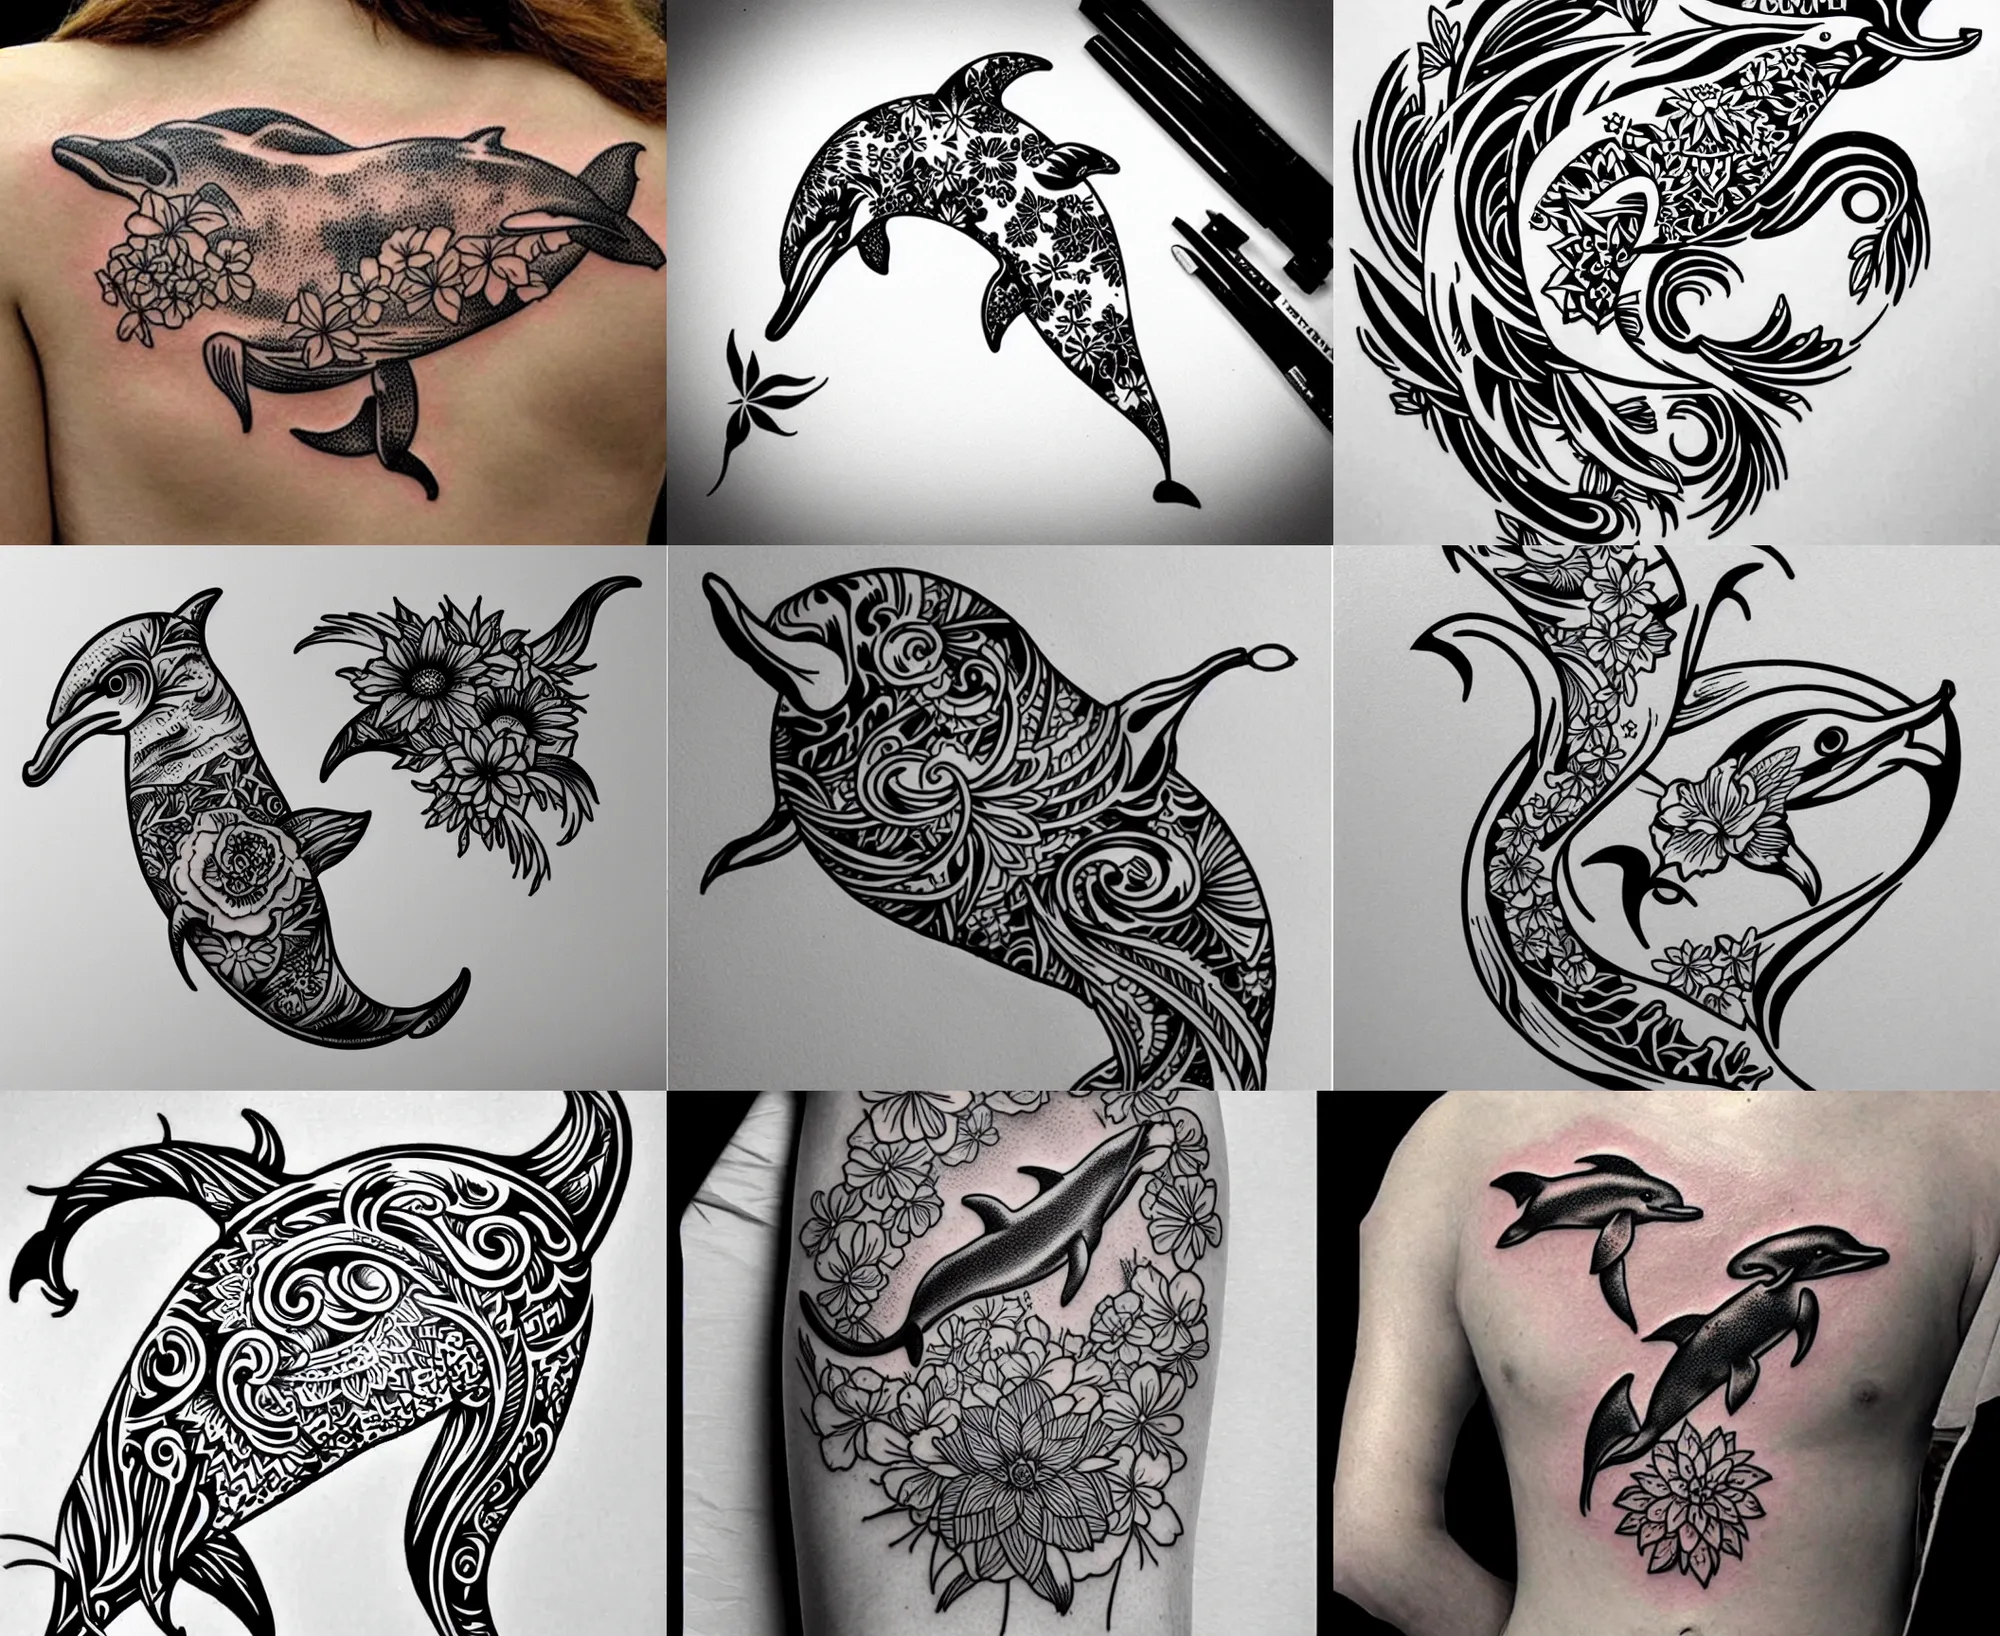 Tattoo InkJet Stencil Printing Service, Joker Tattoo Supply